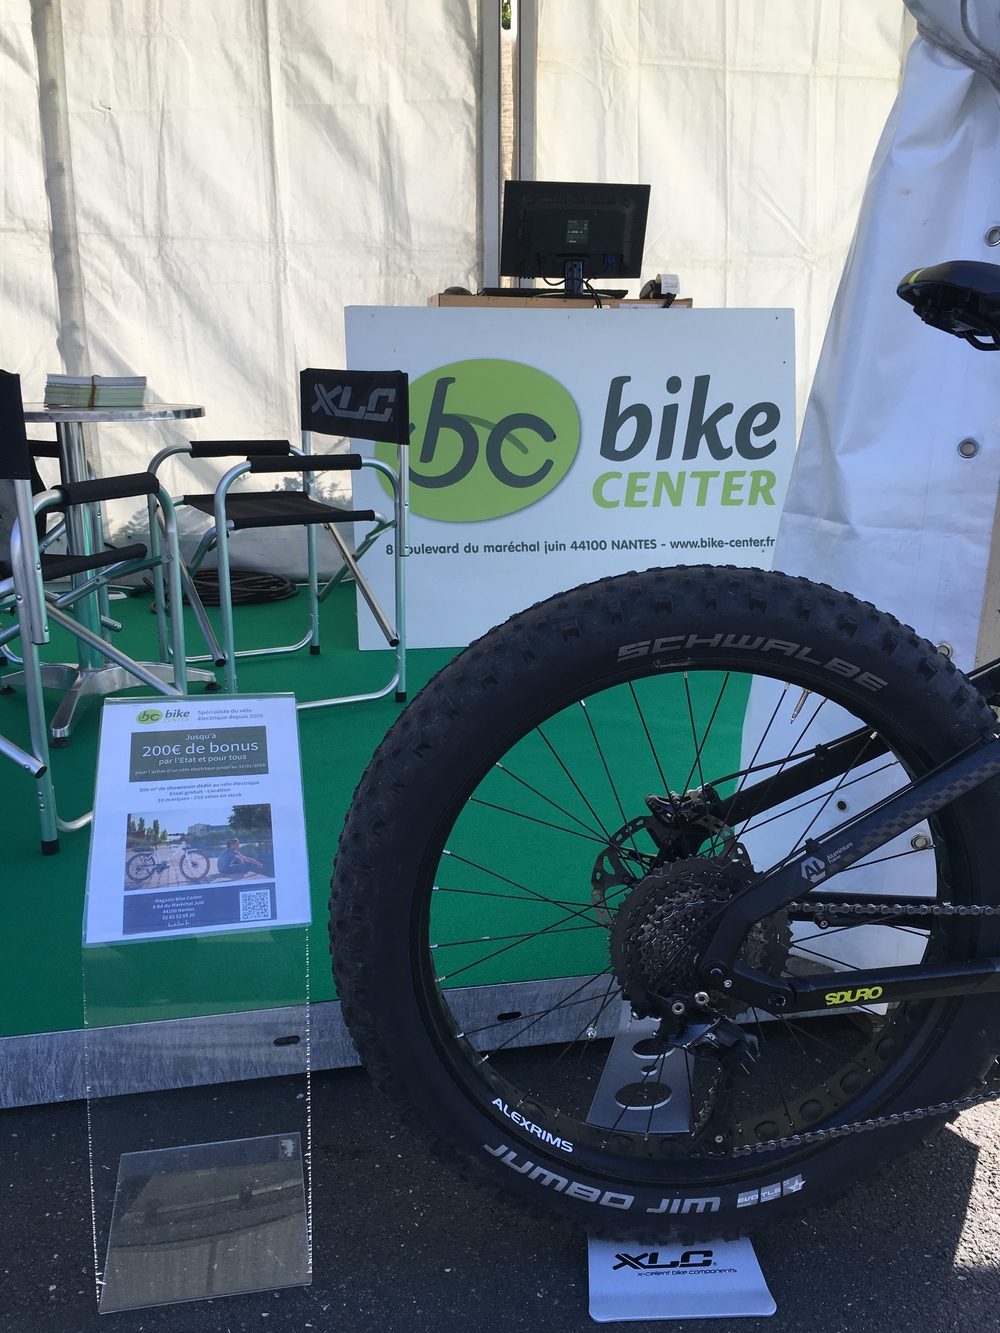 Bike Center Magasin Nantais de vélos à assistance électriques vtc vae vtt promotions foire de nantes 2017